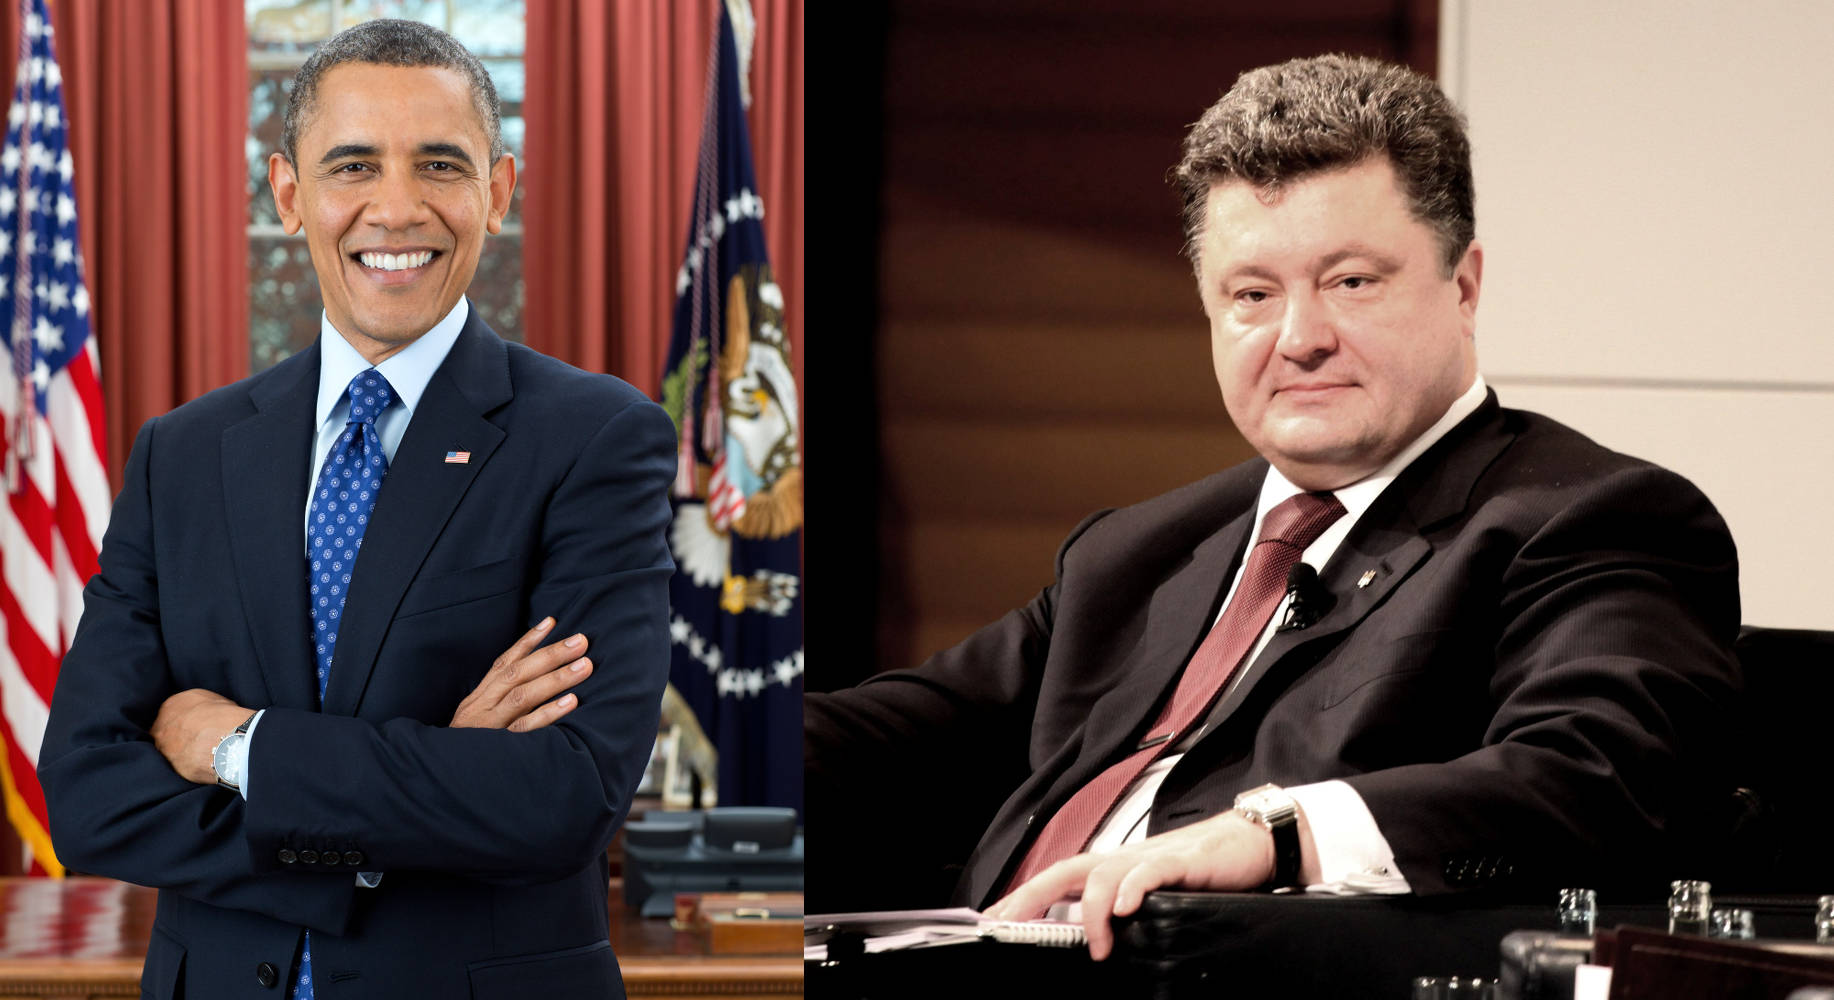 Obama n Poroschenko